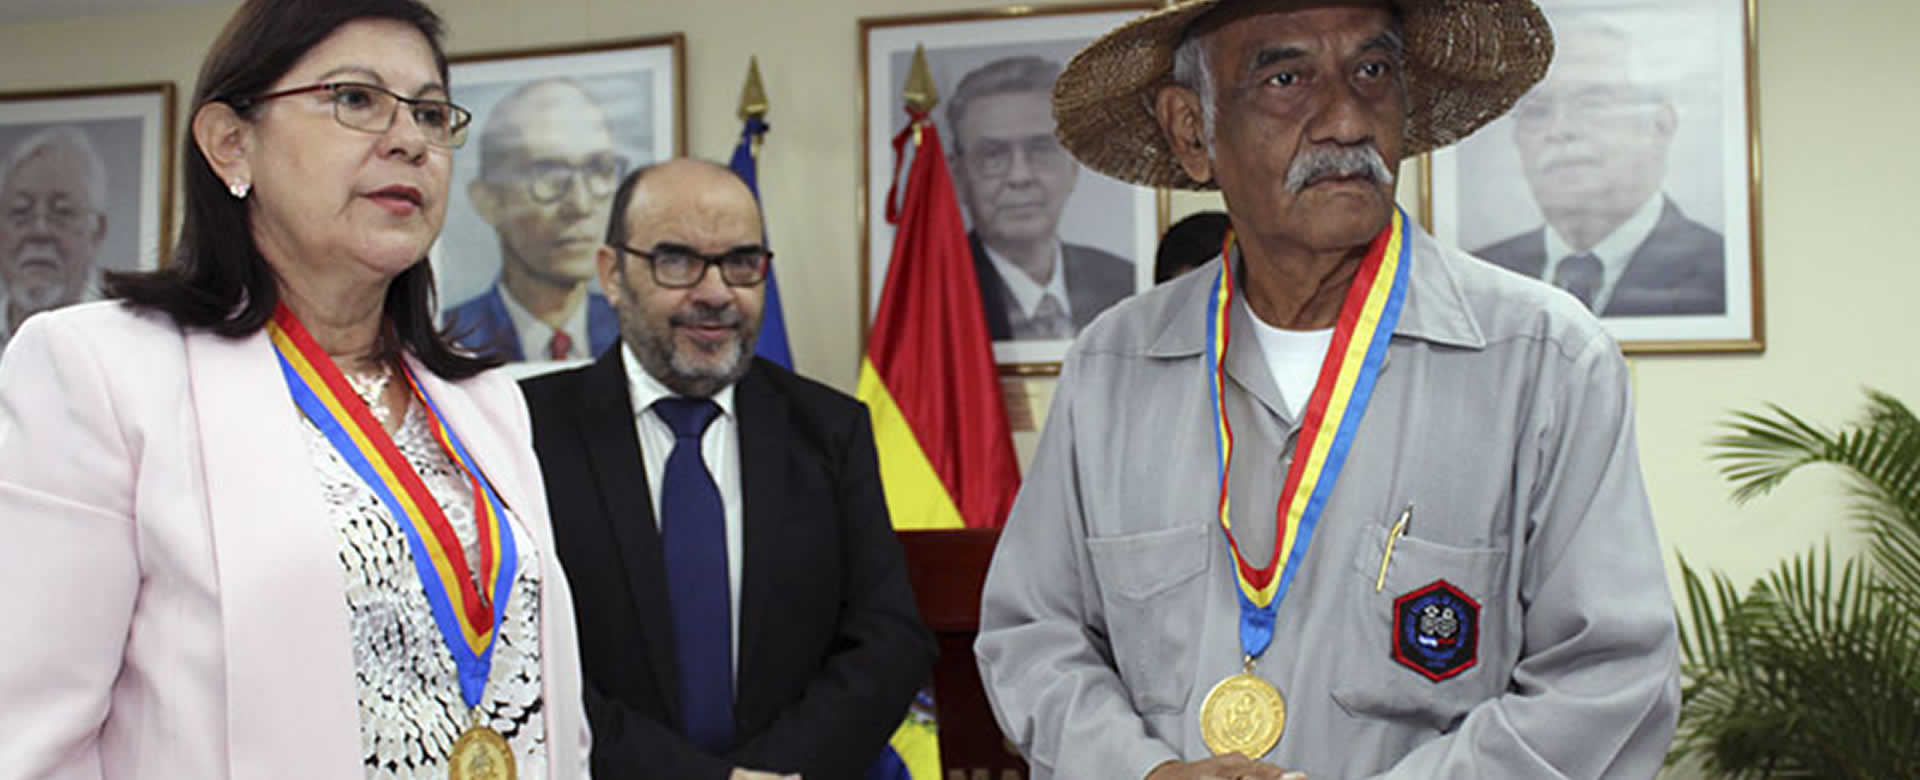 Profesor Orlando Pineda recibe medalla por su alto compromiso con la educación